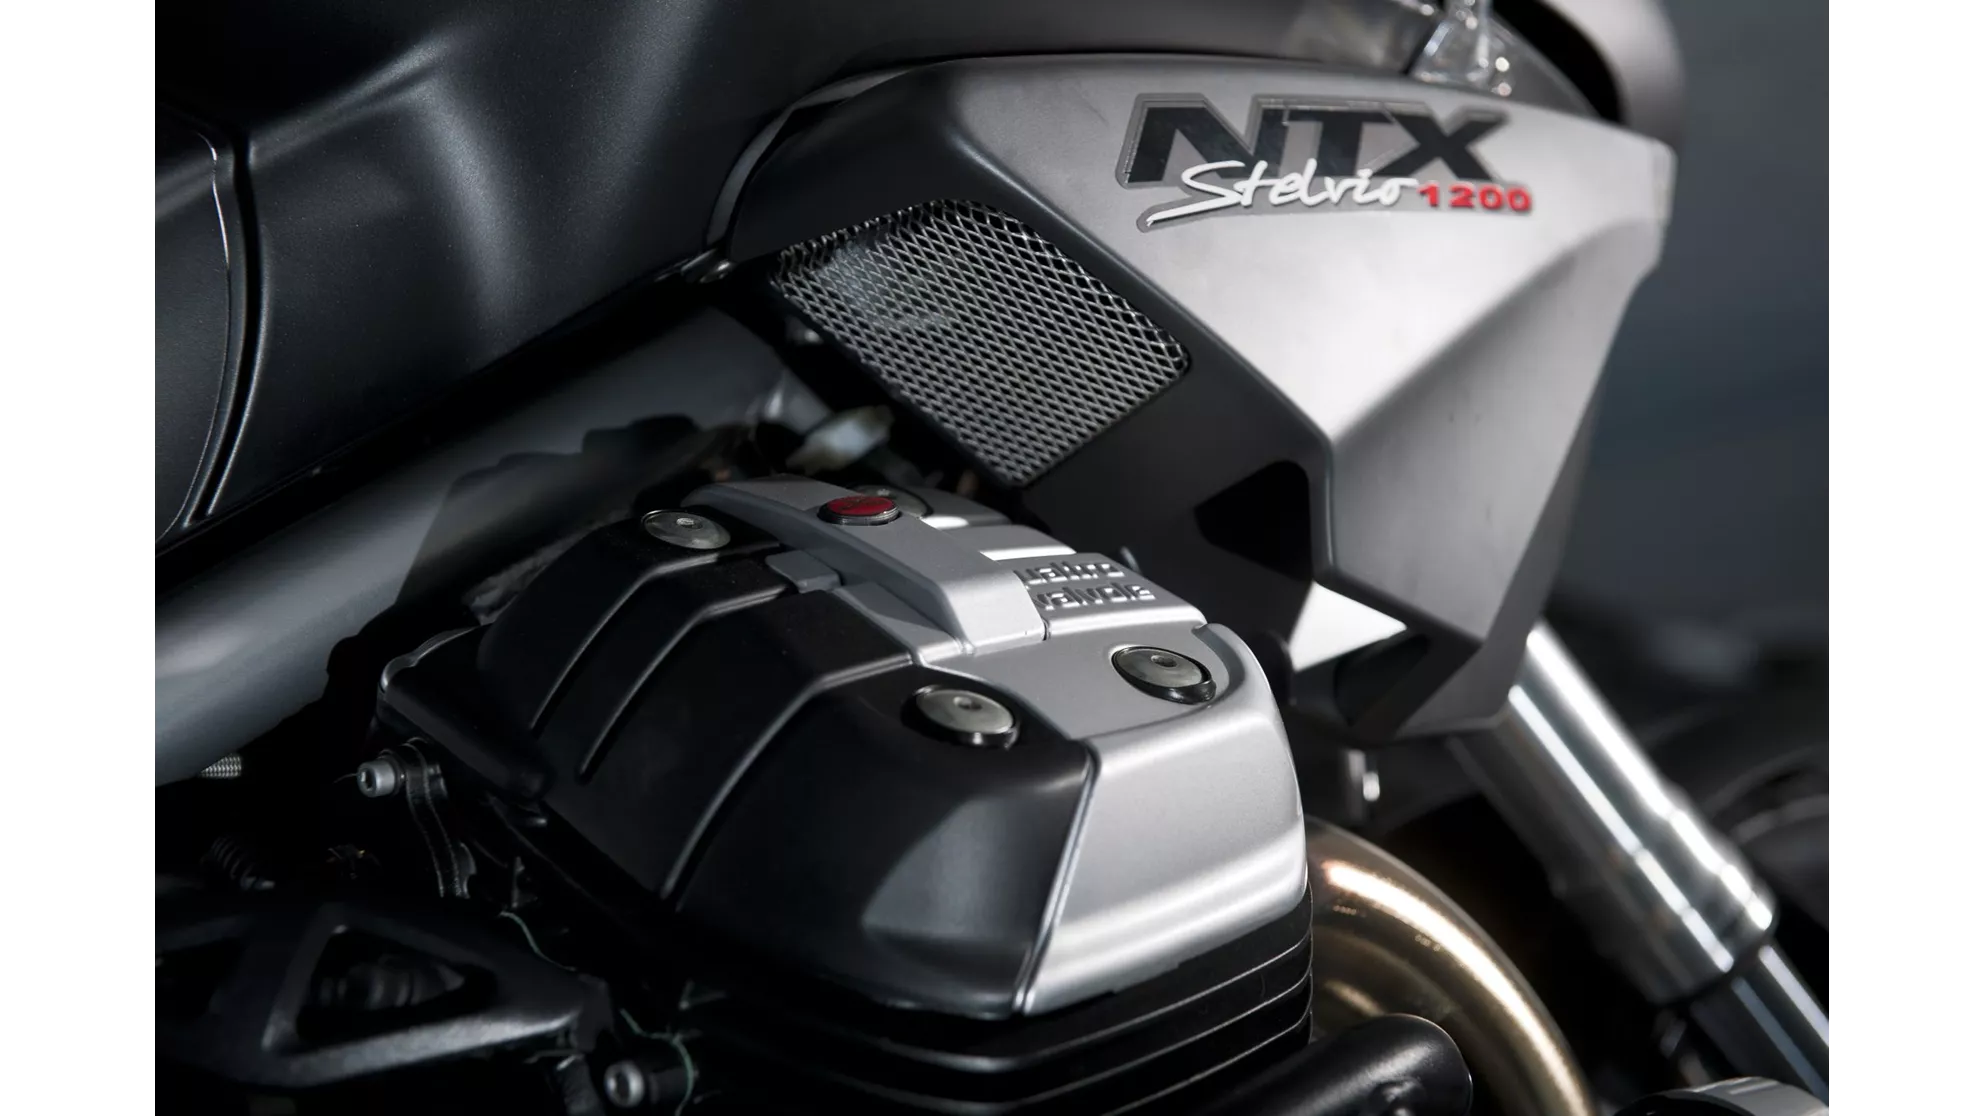 Moto Guzzi Stelvio 1200 8V NTX - Imagen 9